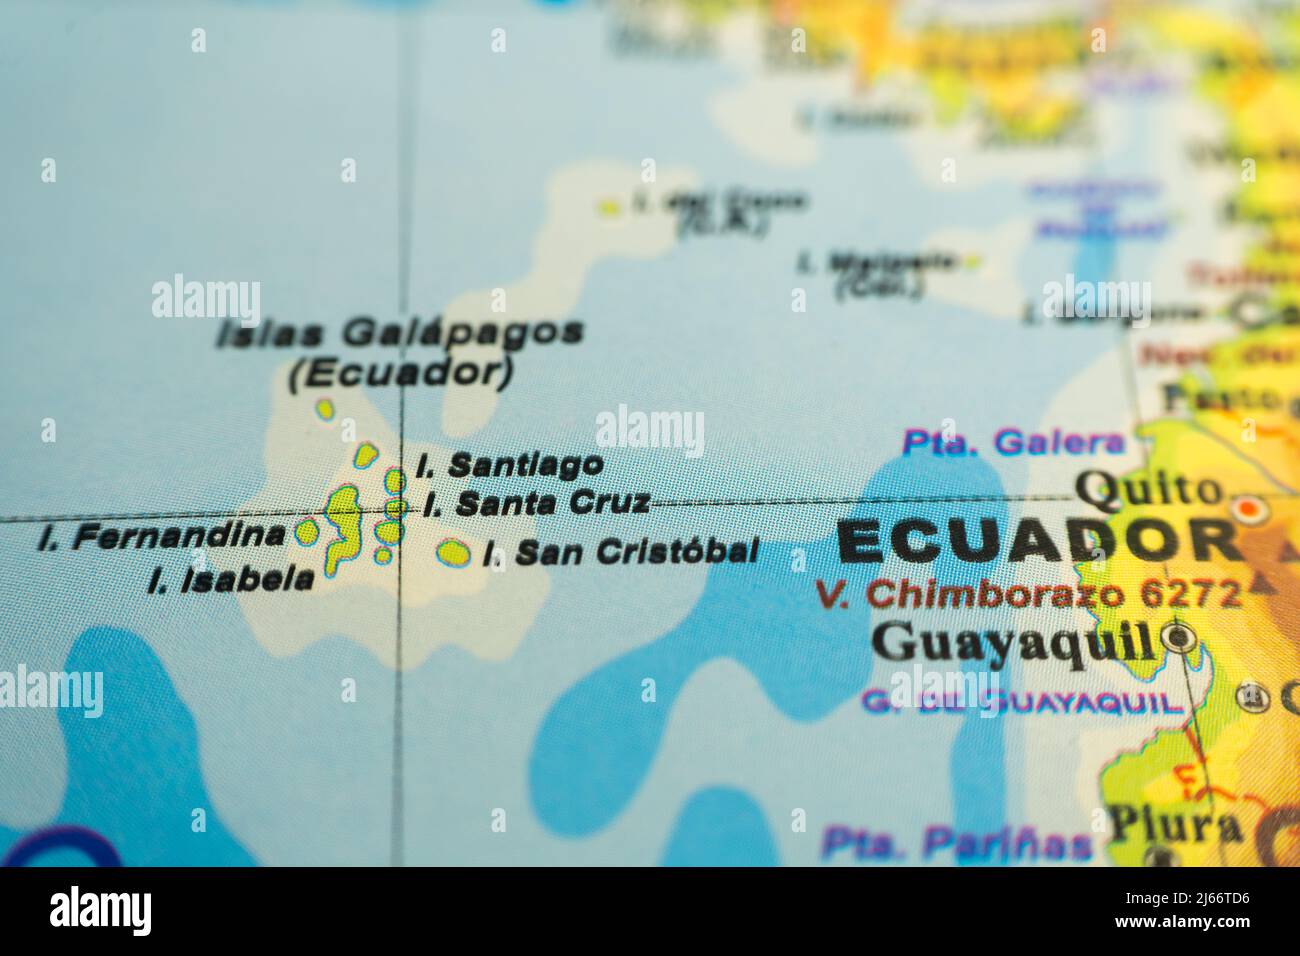 Mappa orografica delle isole Galapagos e dell'Ecuador, con riferimenti in spagnolo. Concetto di cartografia, viaggi, turismo, geografia. Messa a fuoco differenziale Foto Stock